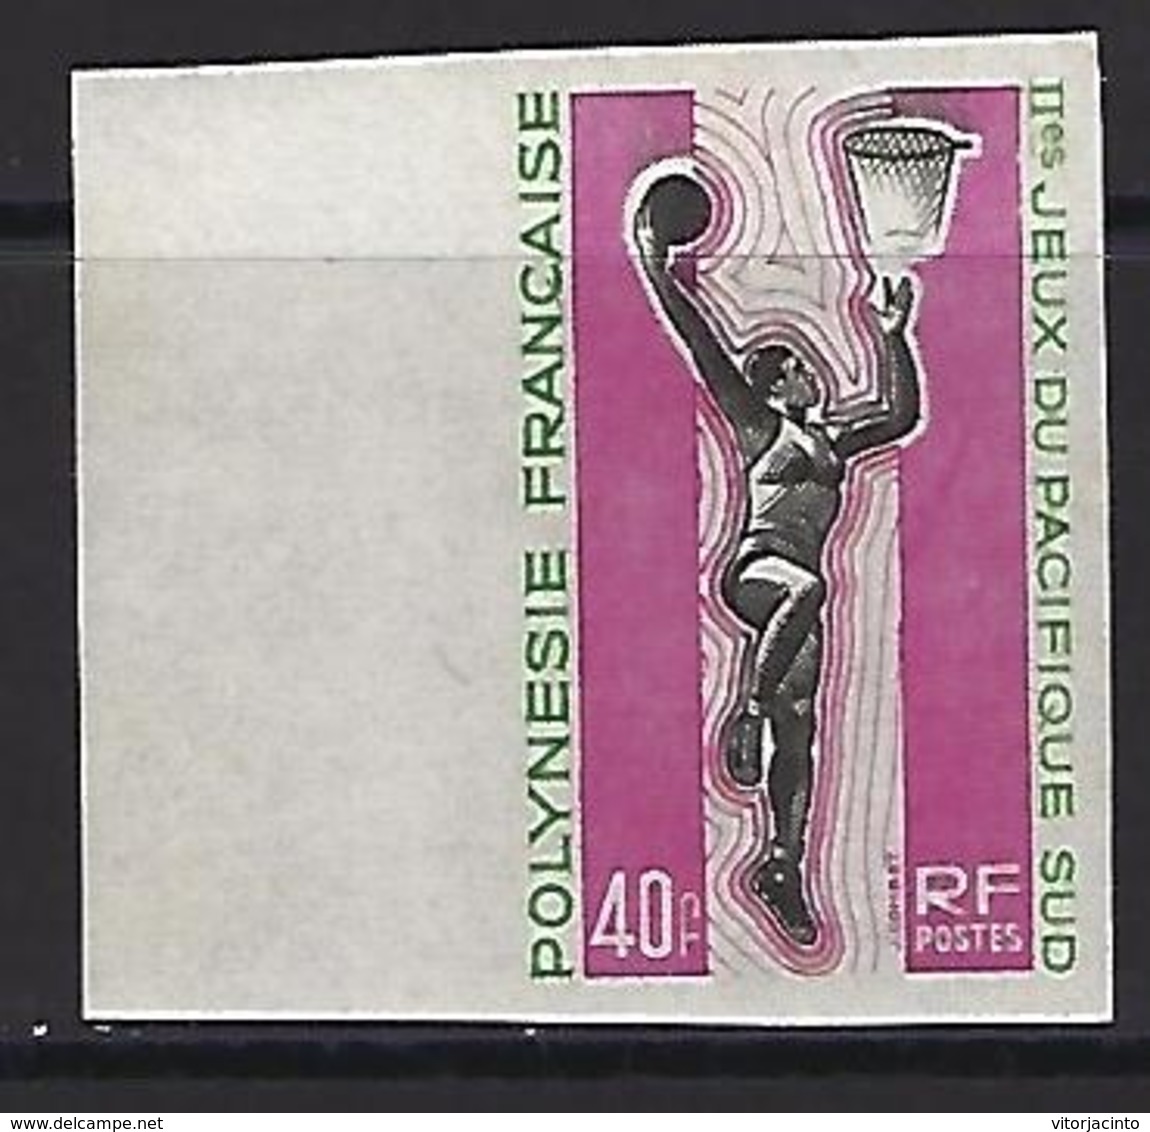 French Polynesia - Non-indented Stamps - 2015 Pacific Games - Sin Dentar, Pruebas De Impresión Y Variedades